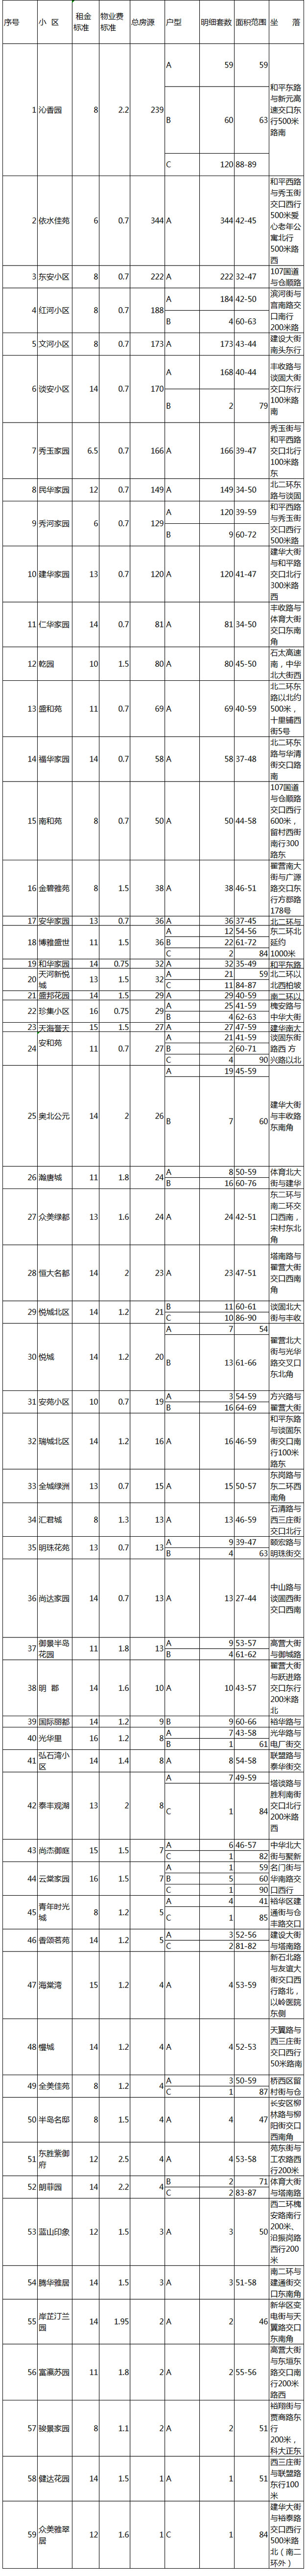 石家庄市2019年第二批公共保障房配租房源明细表-中国网地产